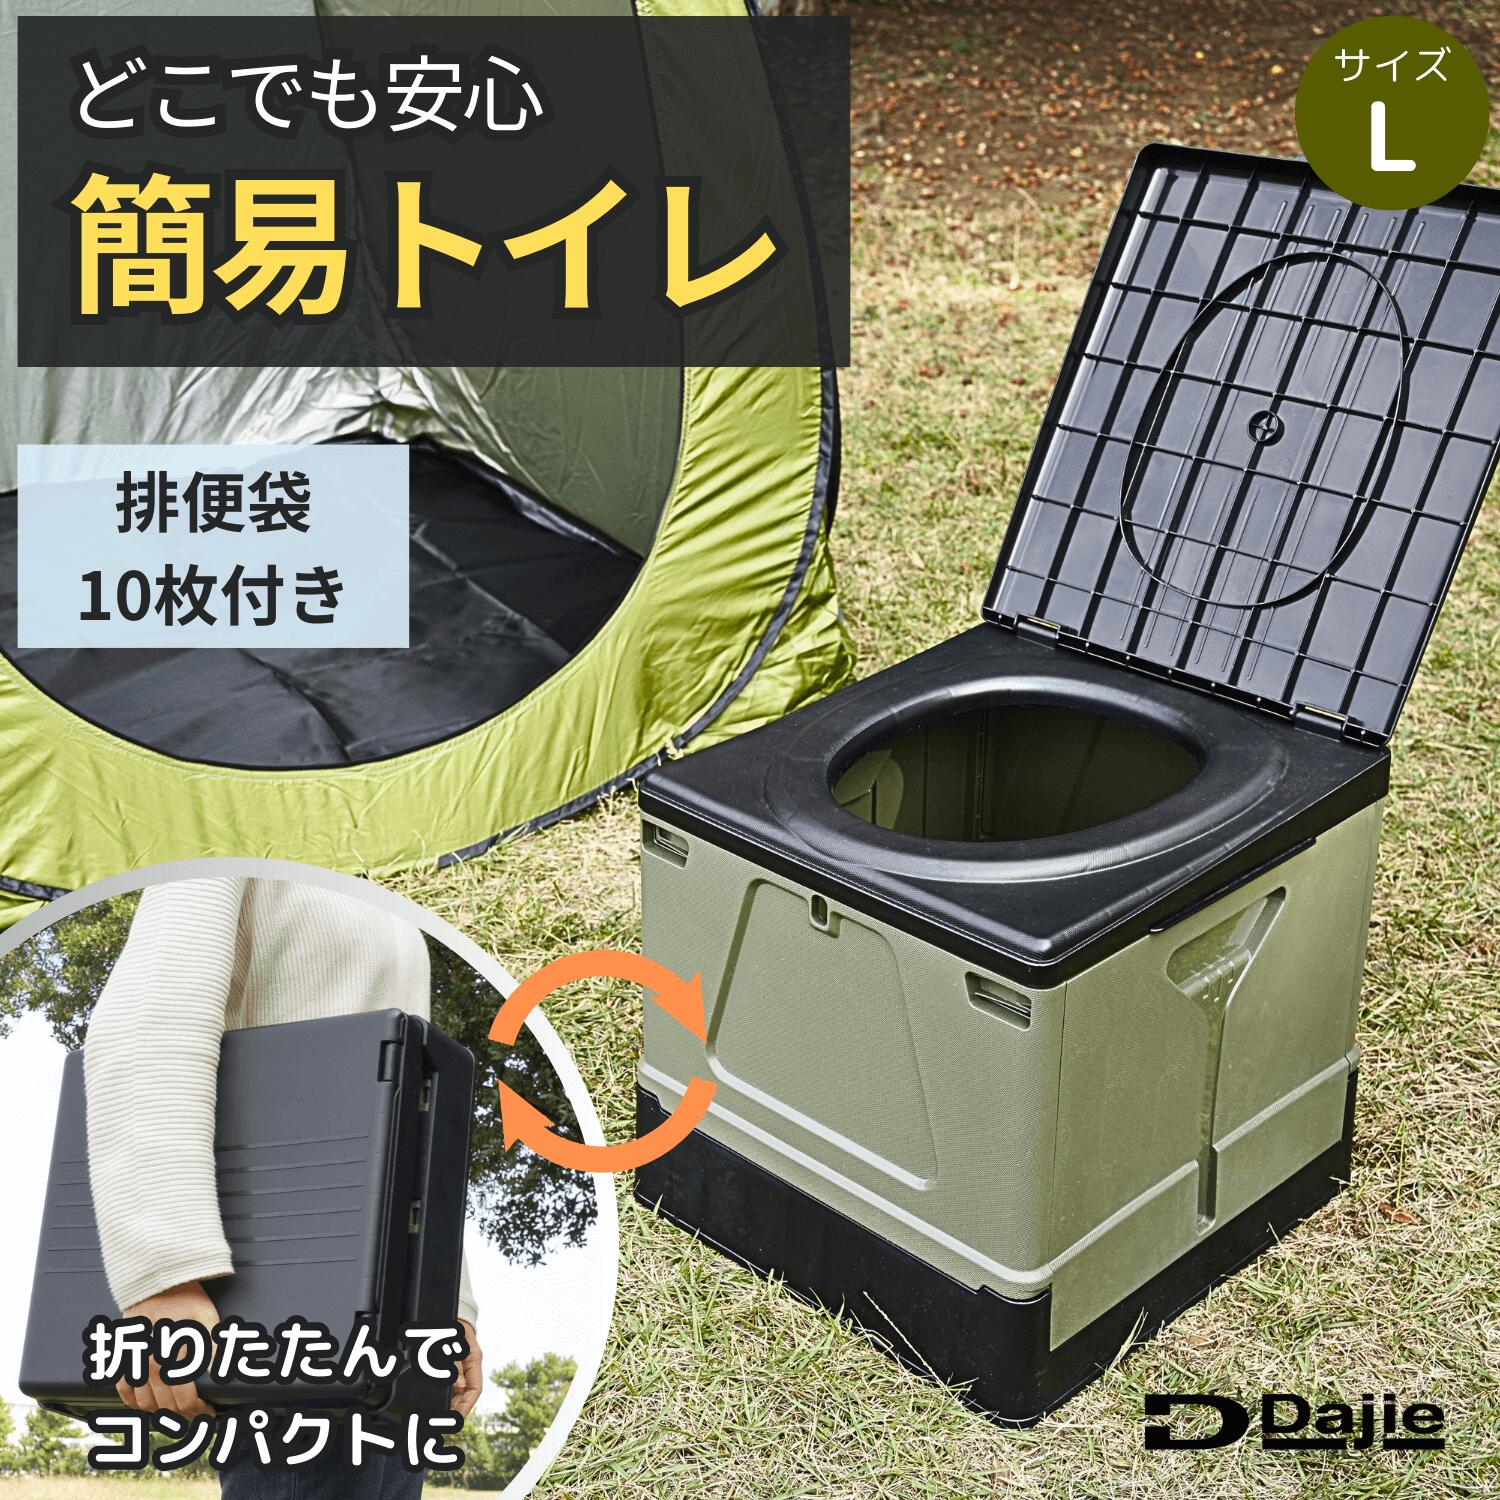 Dajie(ダジエ) スツーレ2 簡易トイレ ポータブルトイレ 携帯トイレ 耐荷重150kg 排便袋10枚入り